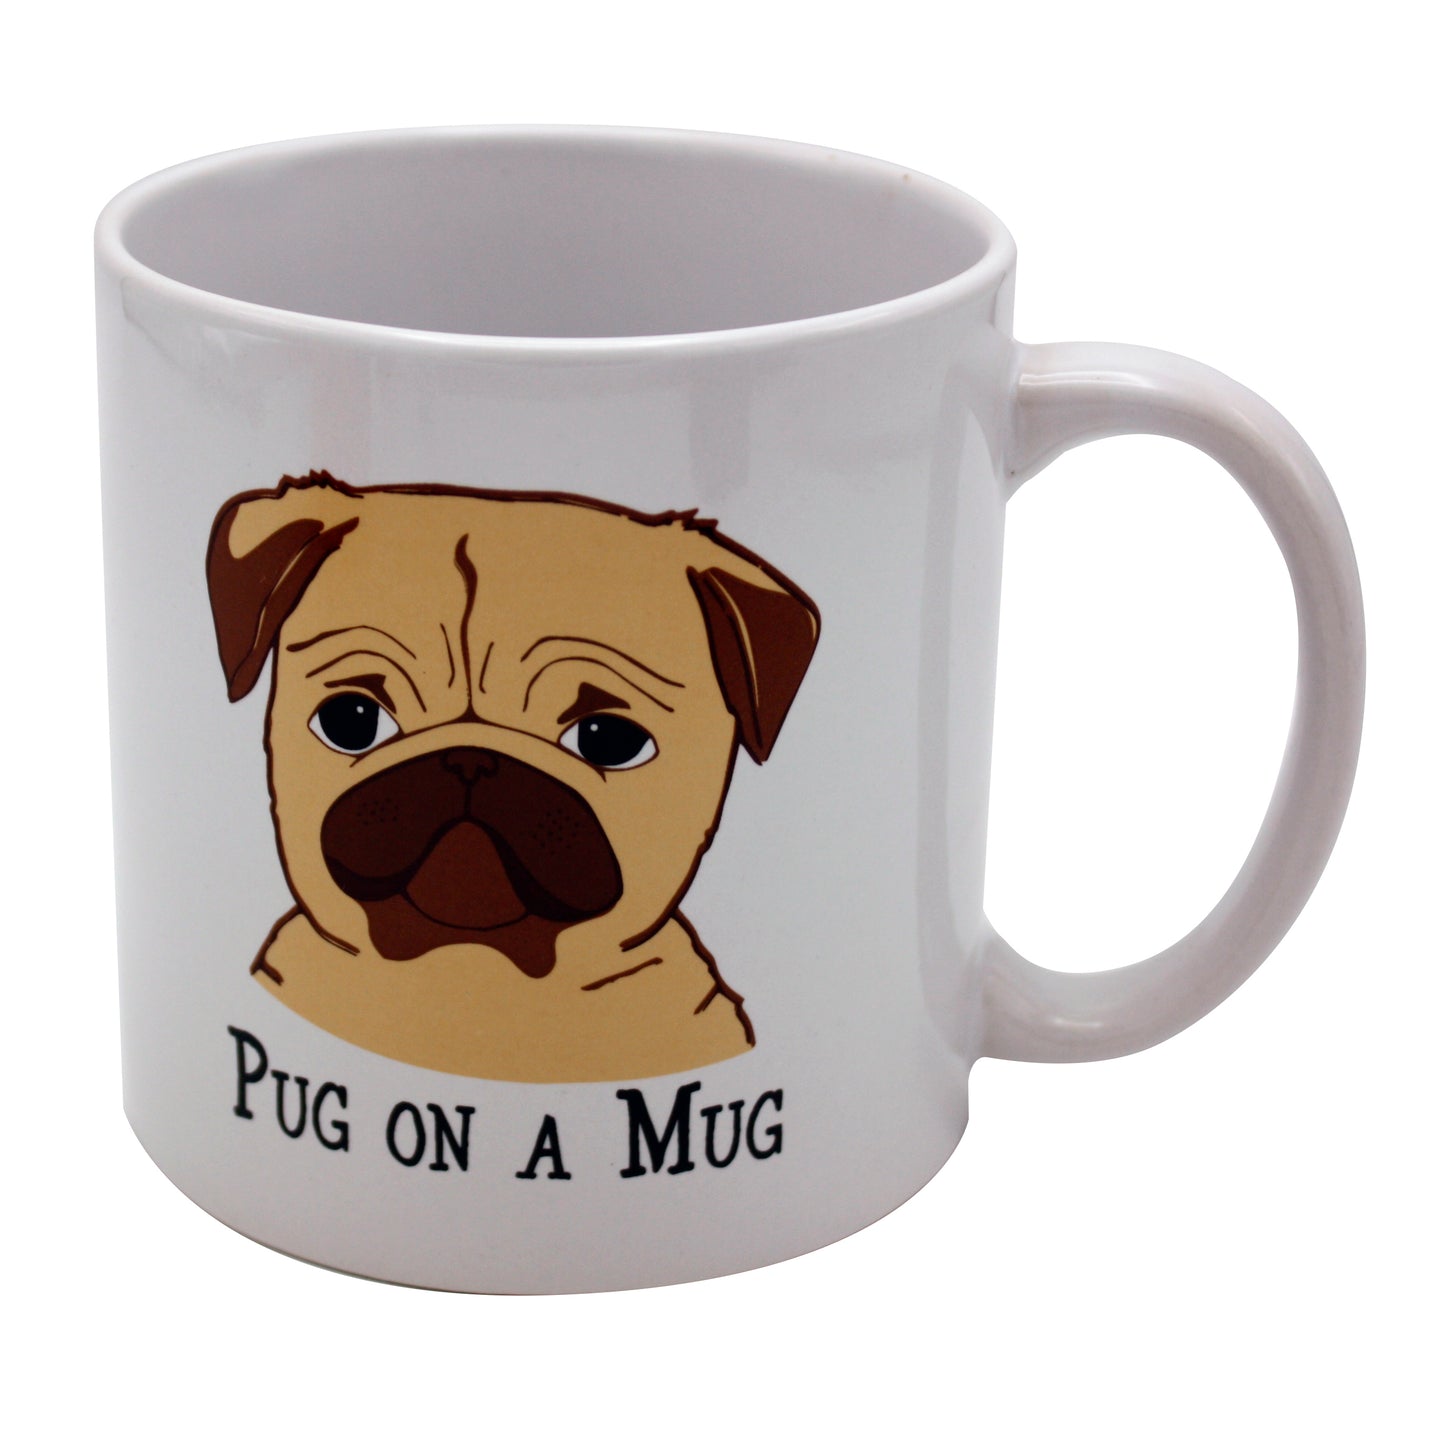 Giant Pug on a Mug